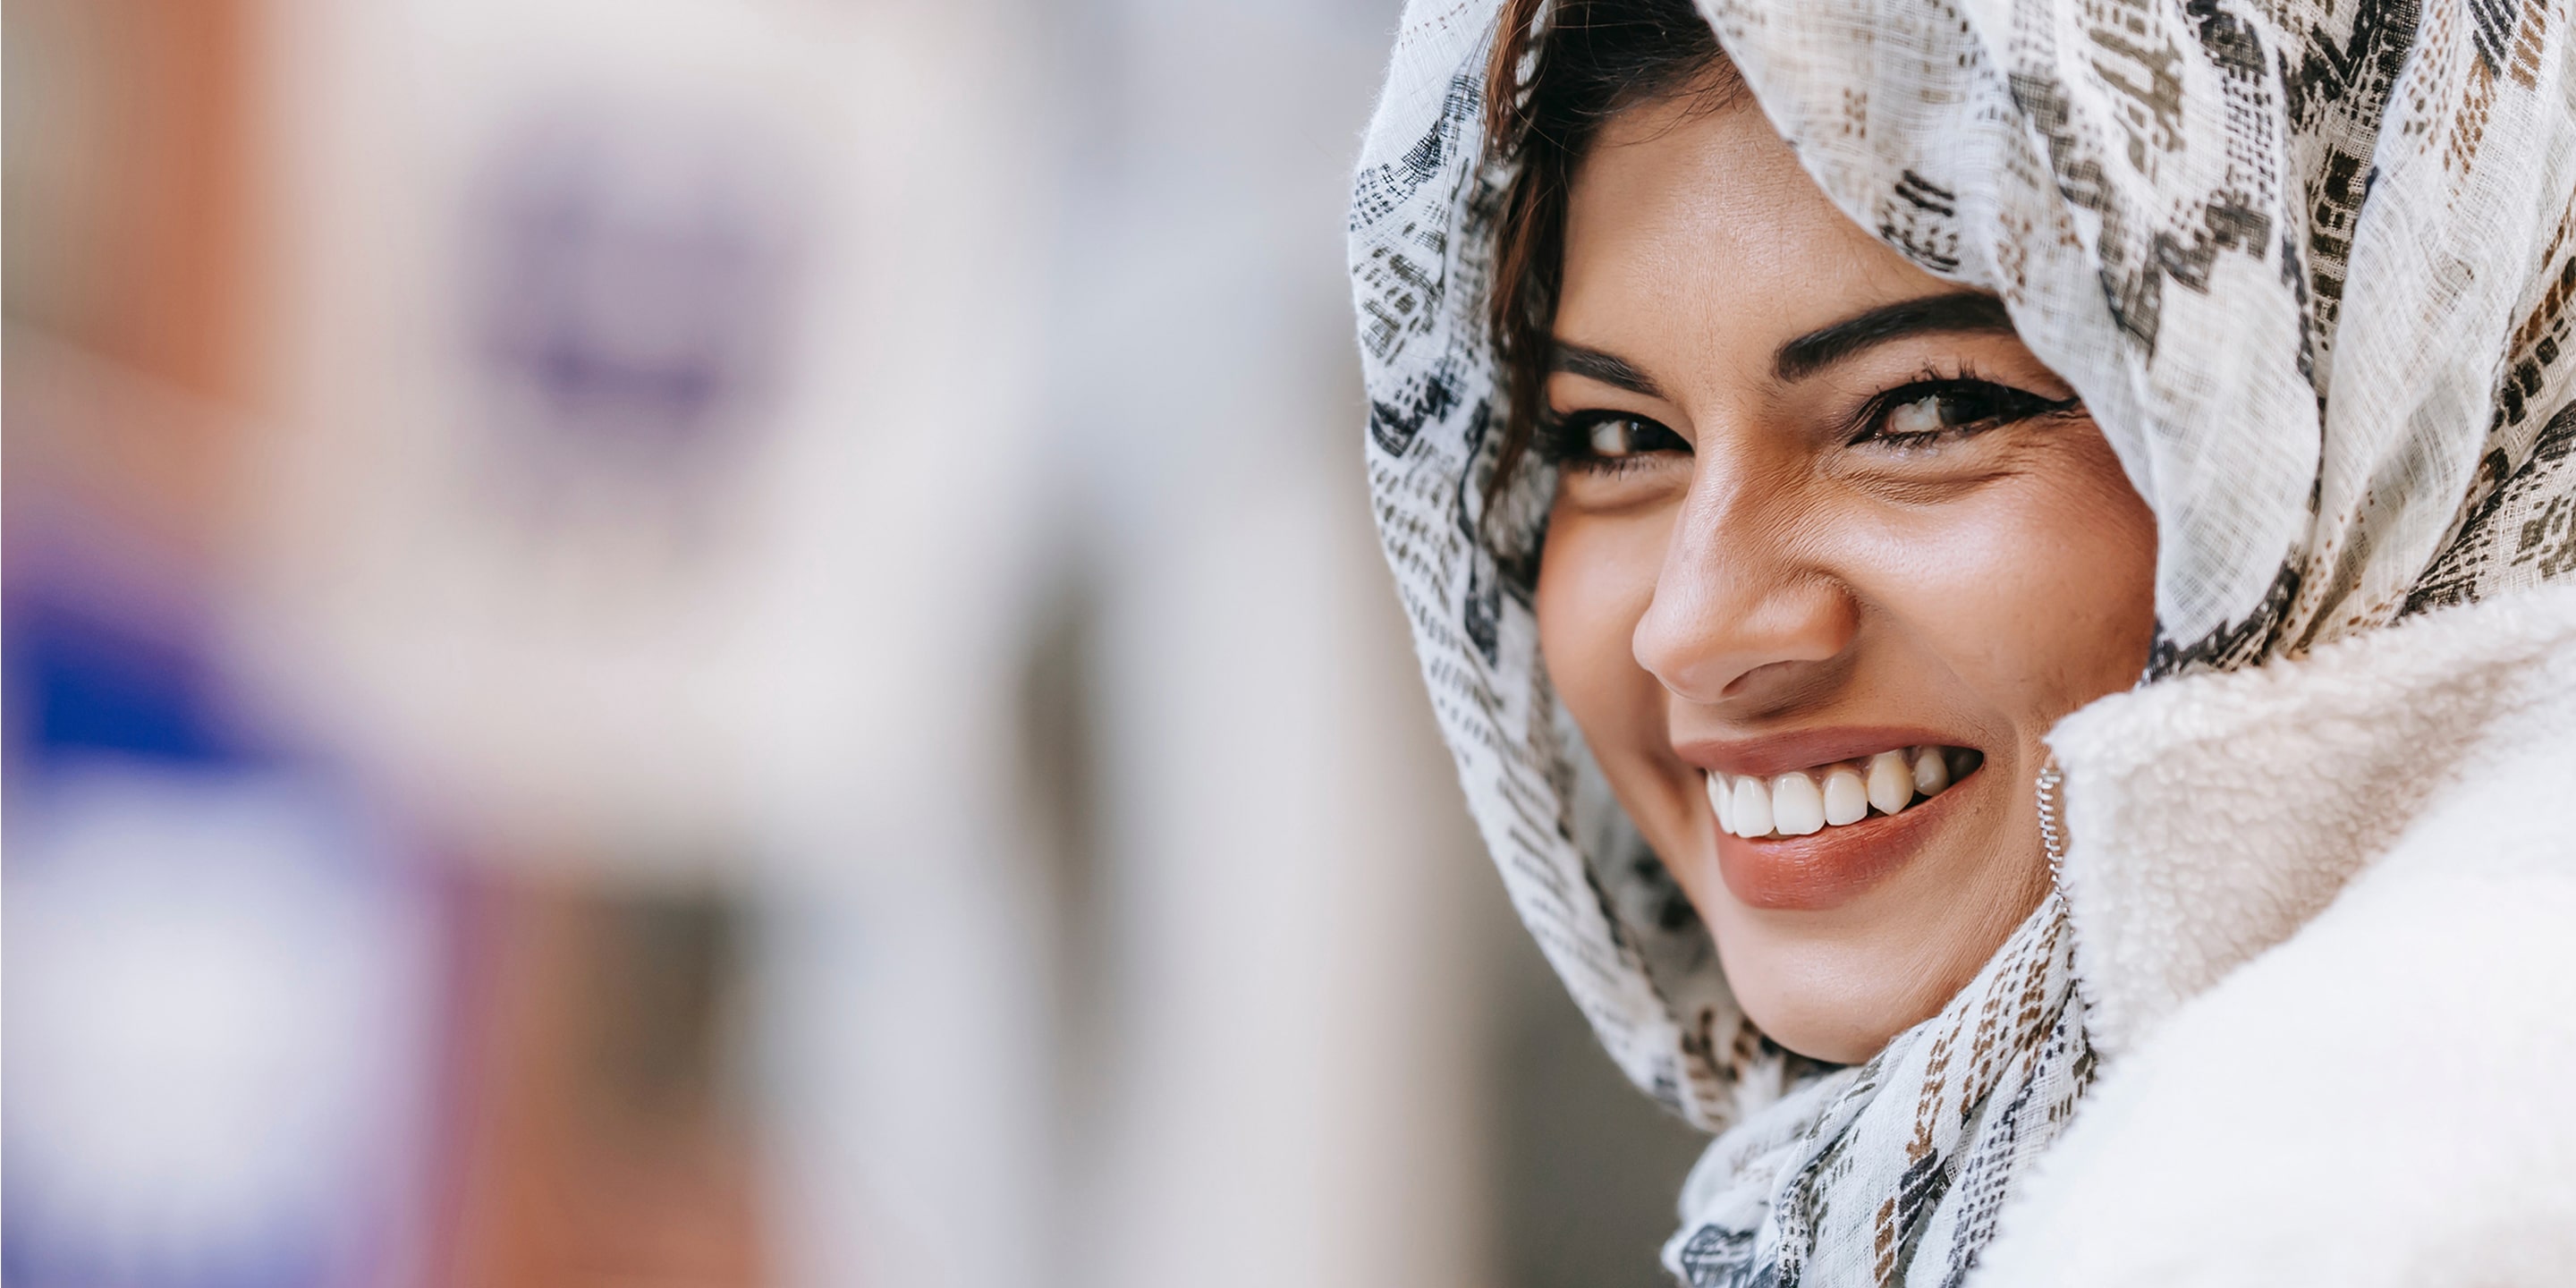 Smiling woman in hijab